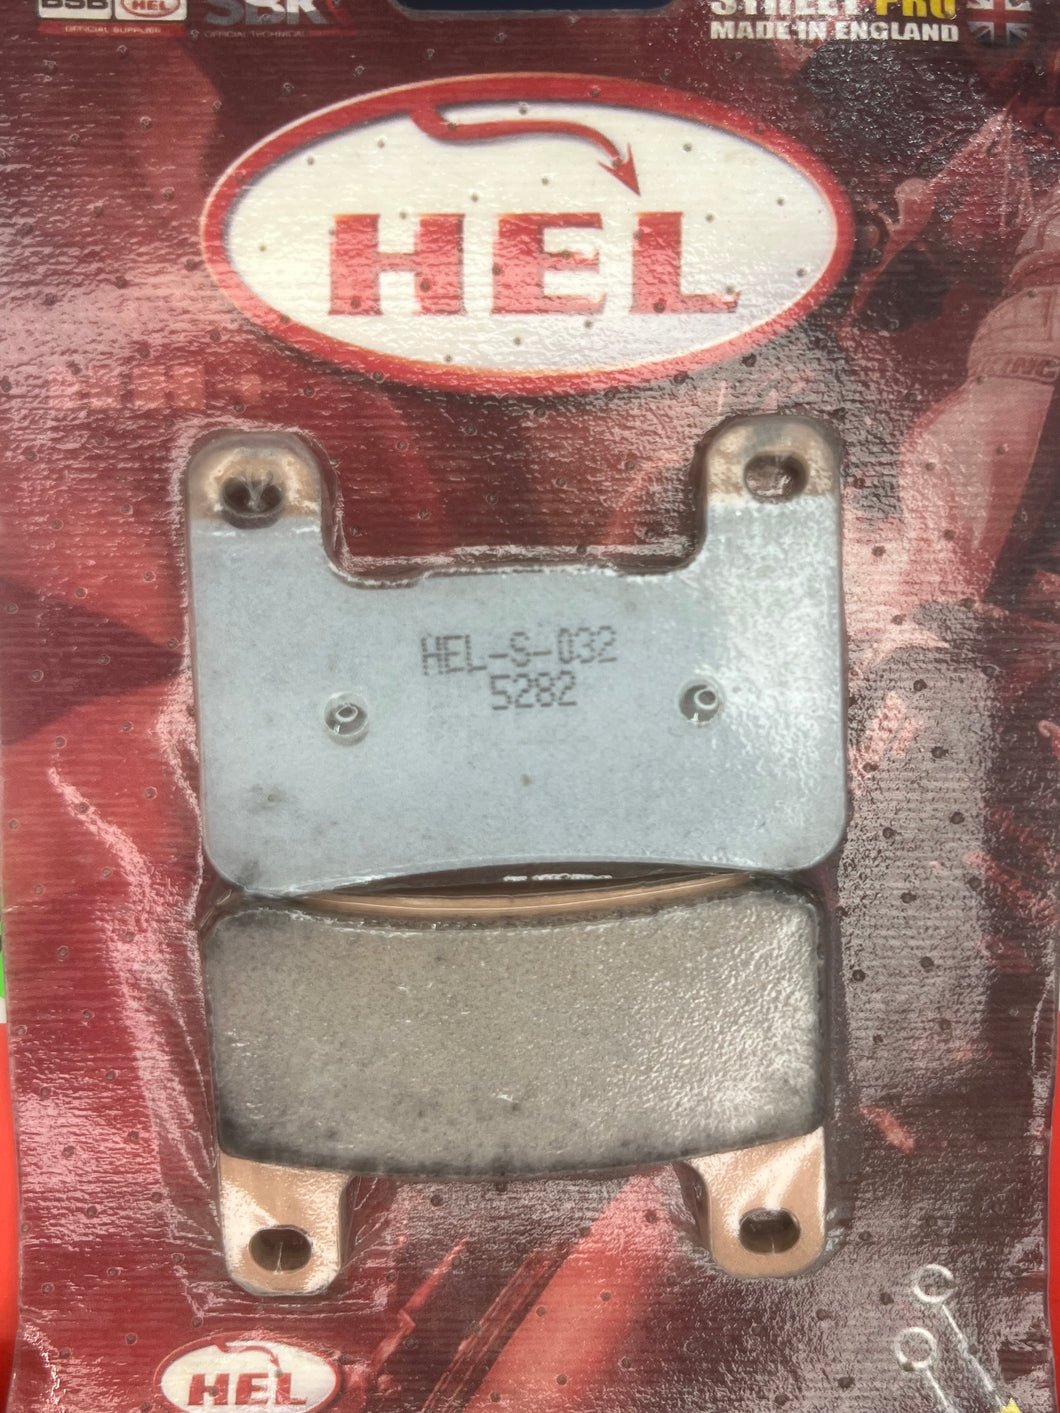 HEL-T-032 (Front)